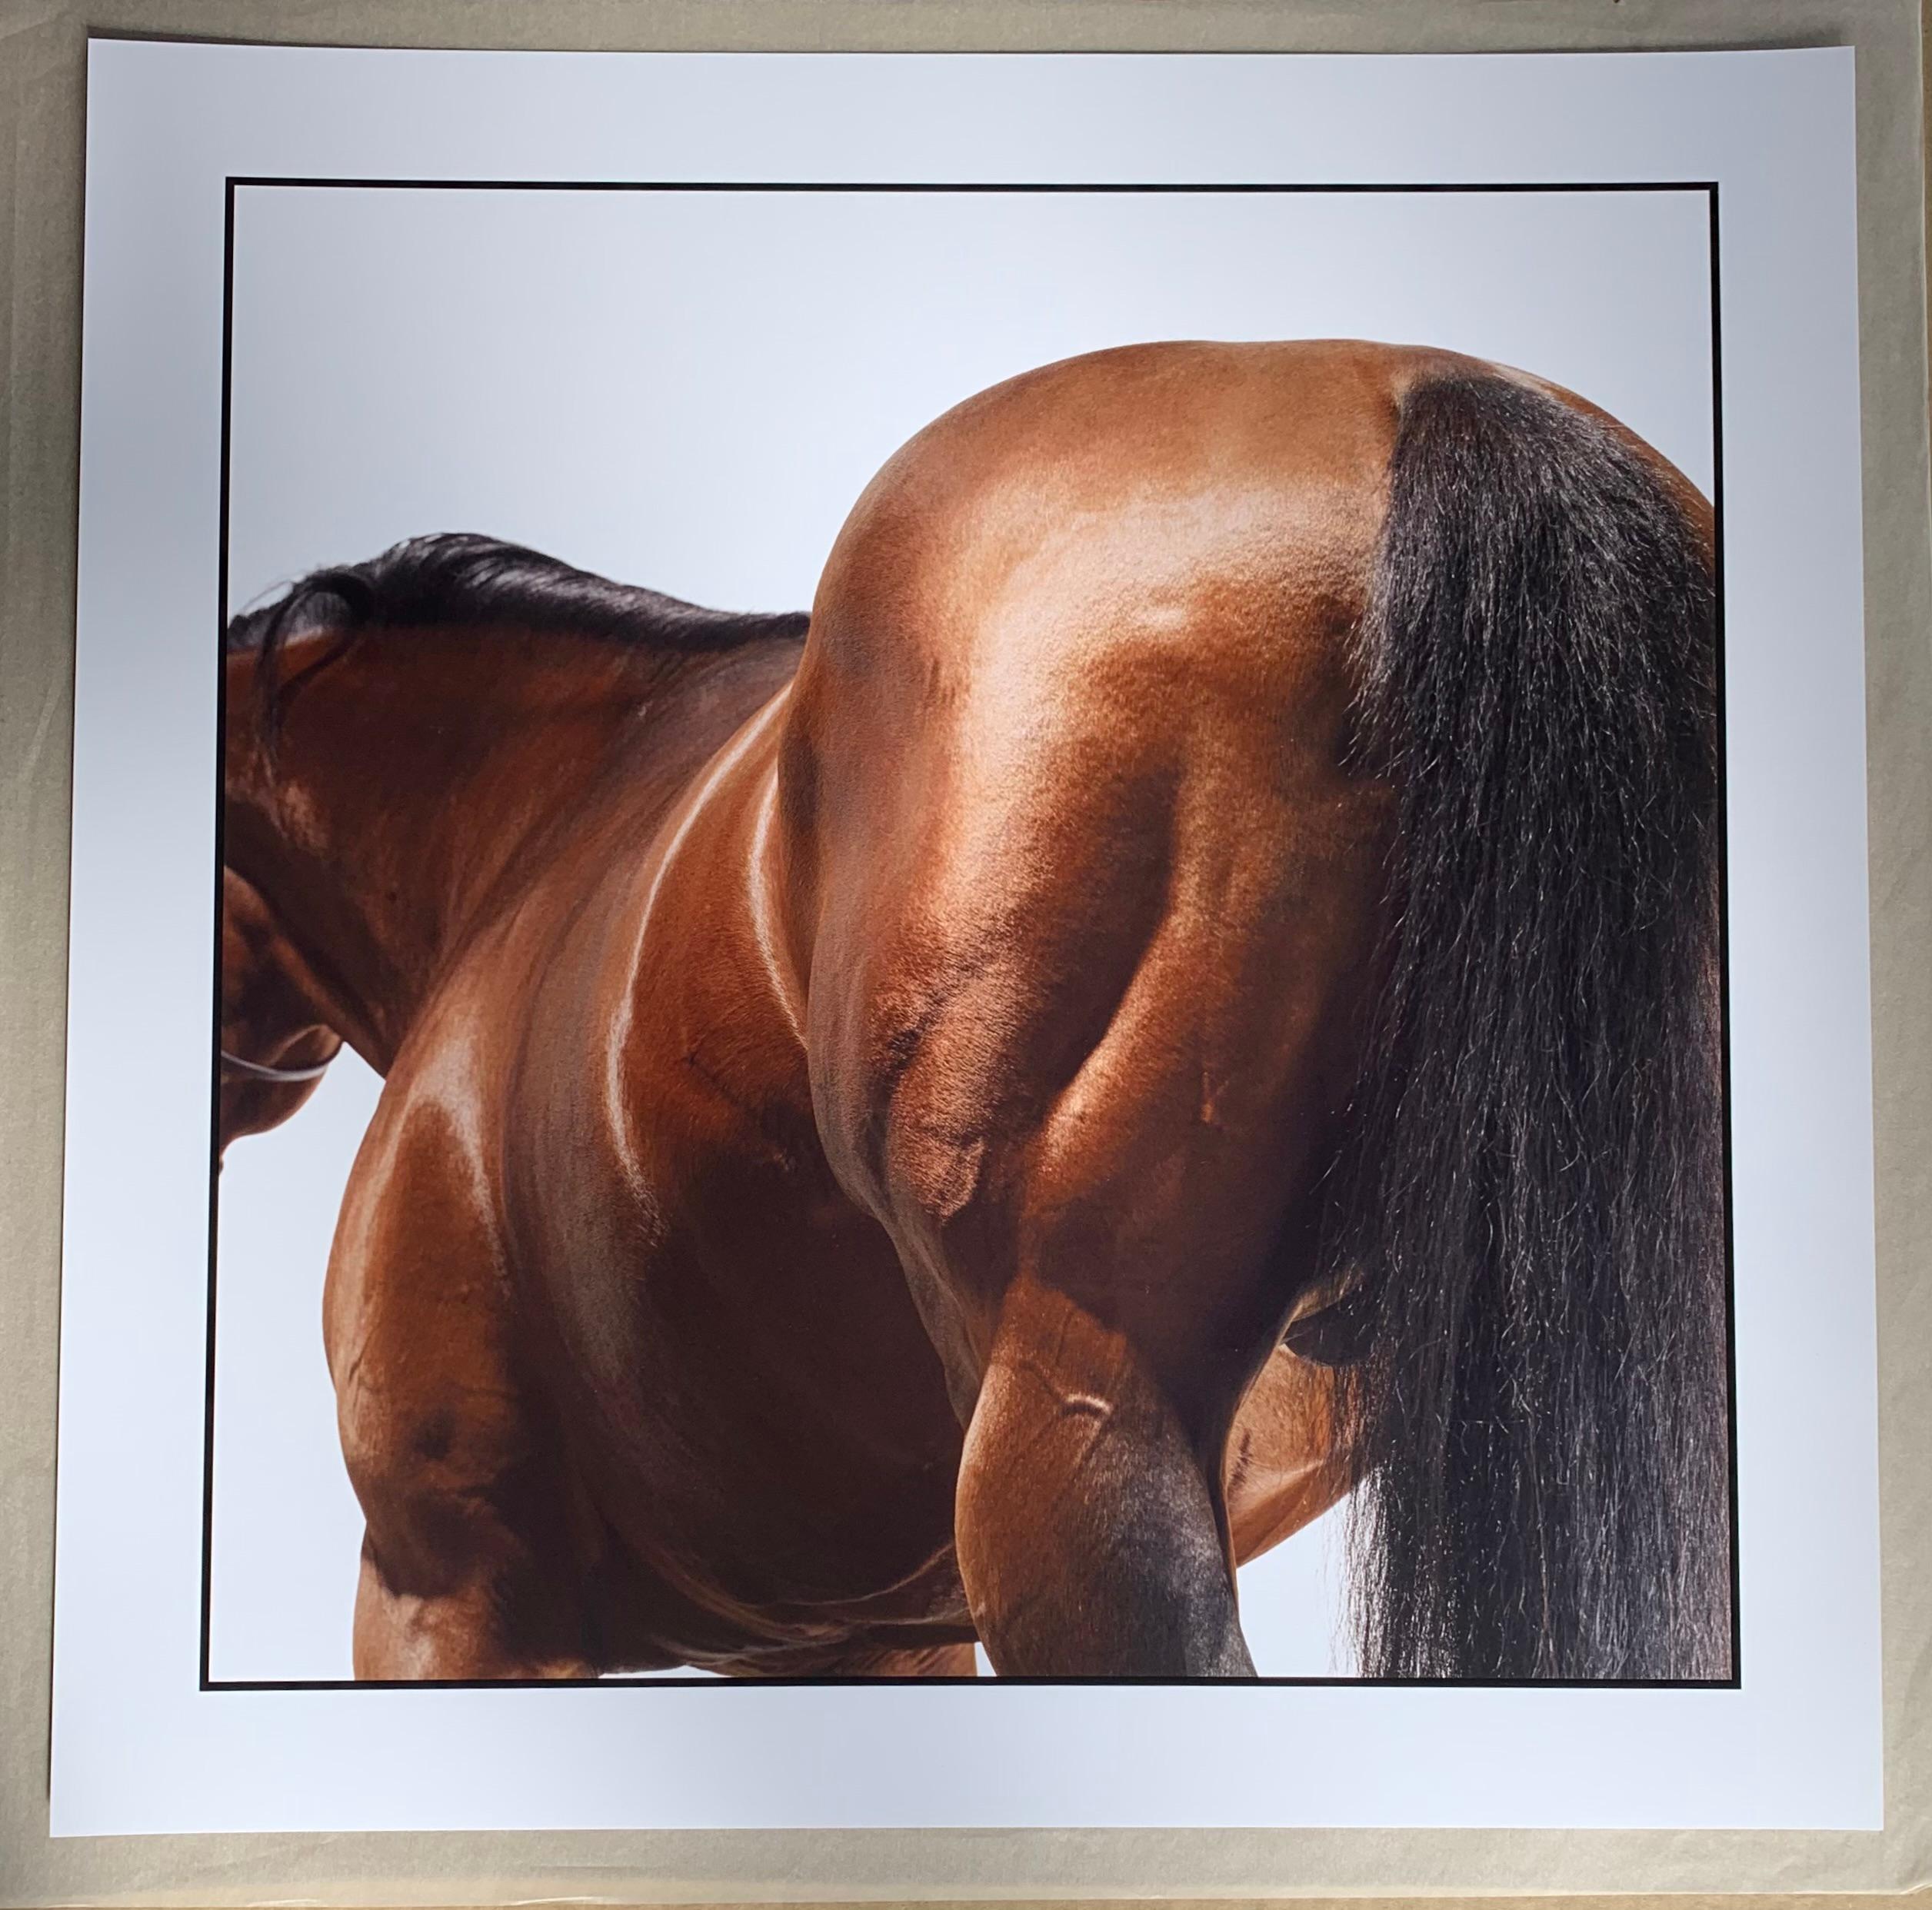 Portrait du Studio A : Dubawi - Impression pigmentaire sur papier Hahnemühle - non encadré - Photograph de John Reardon